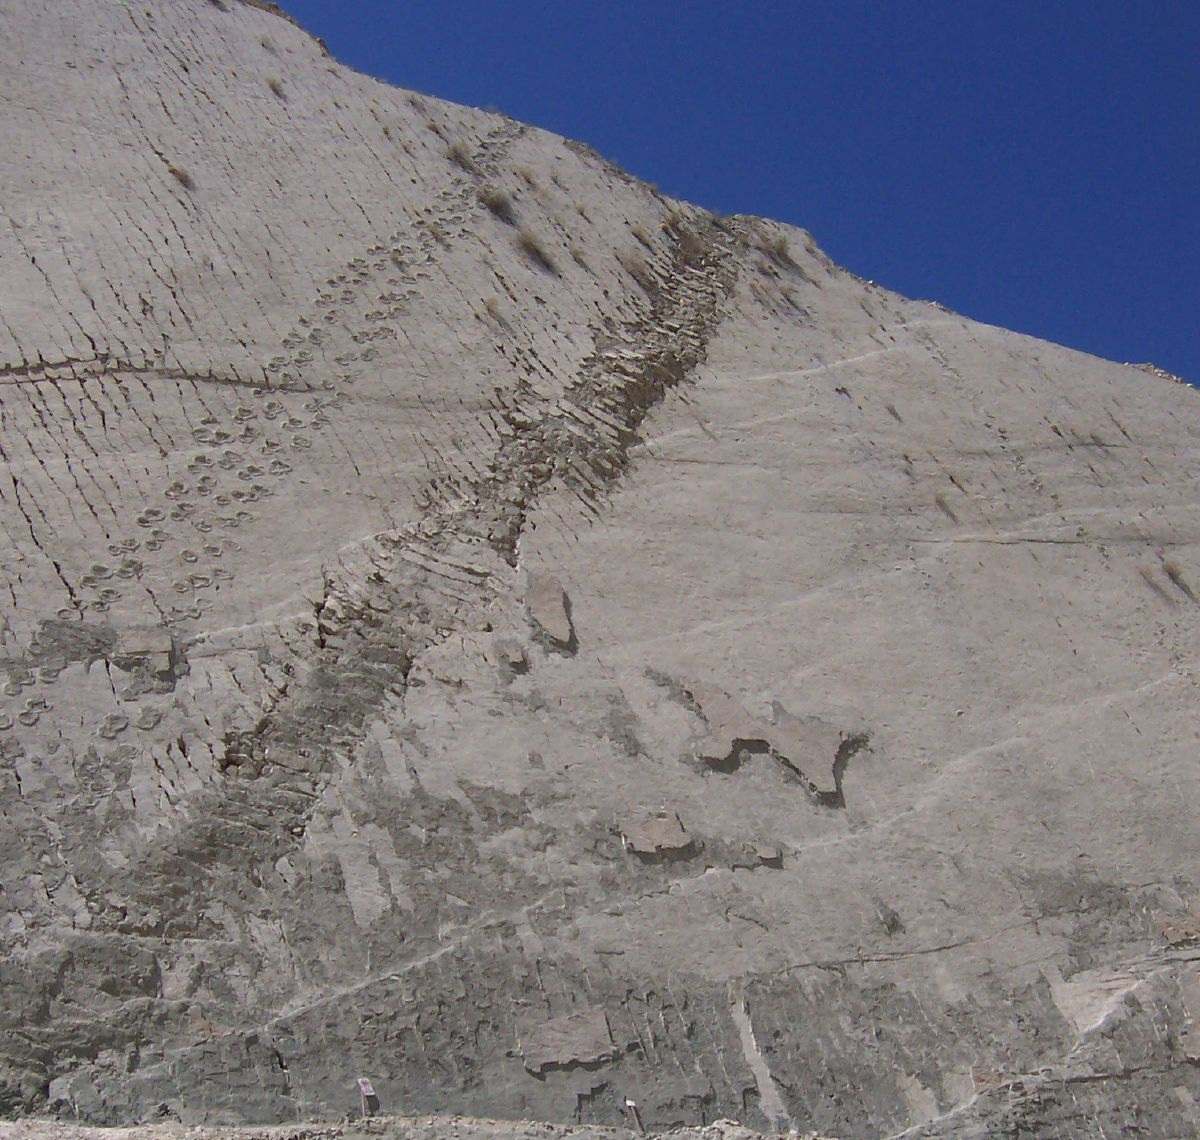 رد پا روی دیوار: آیا دایناسورها واقعاً از صخره های بولیوی بالا می رفتند؟ 6